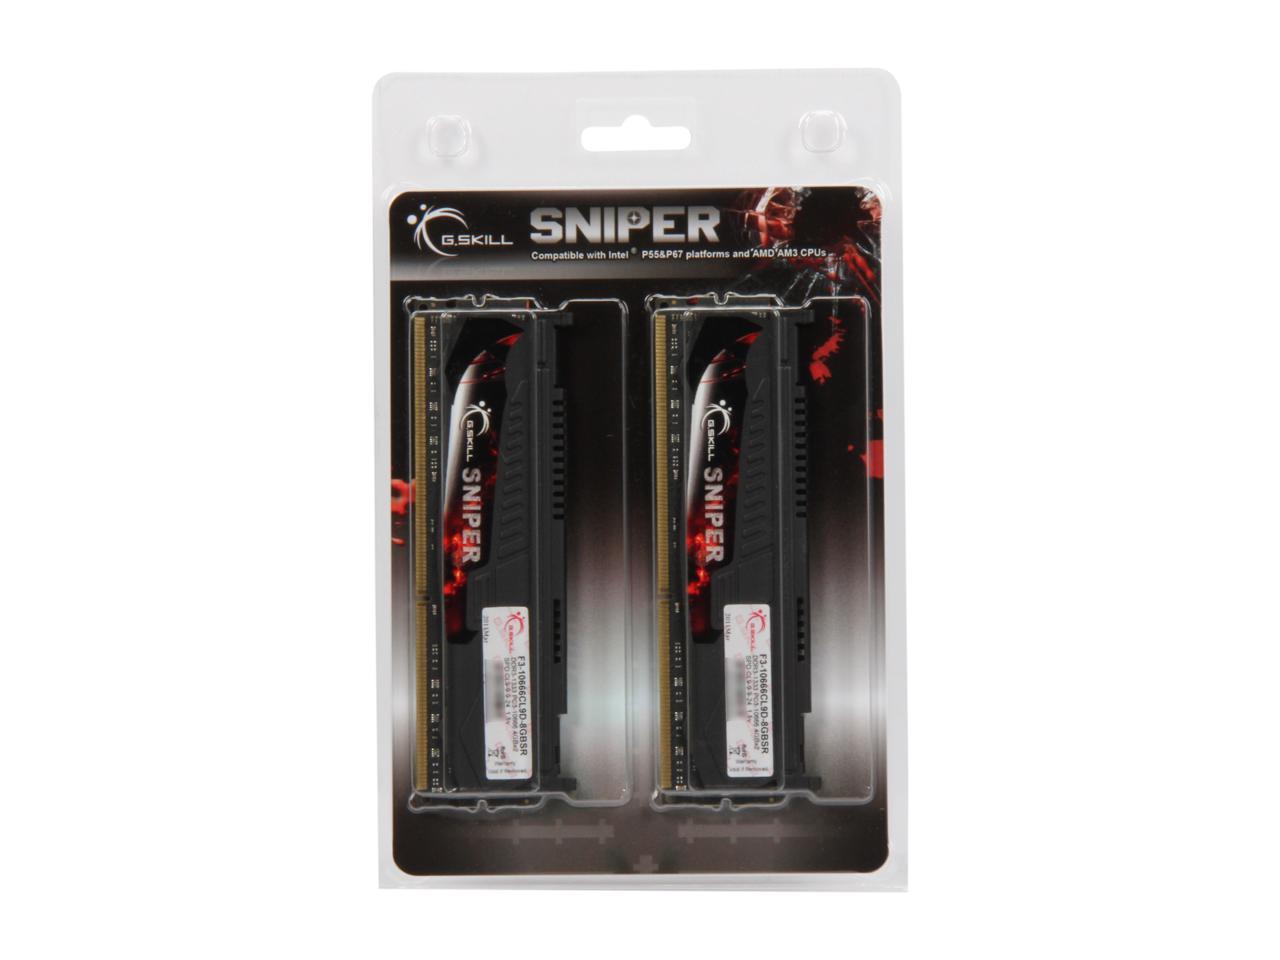 G.SKILL Sniper 8GB (2 x 4GB) 240-Pin DDR3 SDRAM DDR3 1333 (PC3 10666) Desktop Memory Model F3-10666CL9D-8GBSR